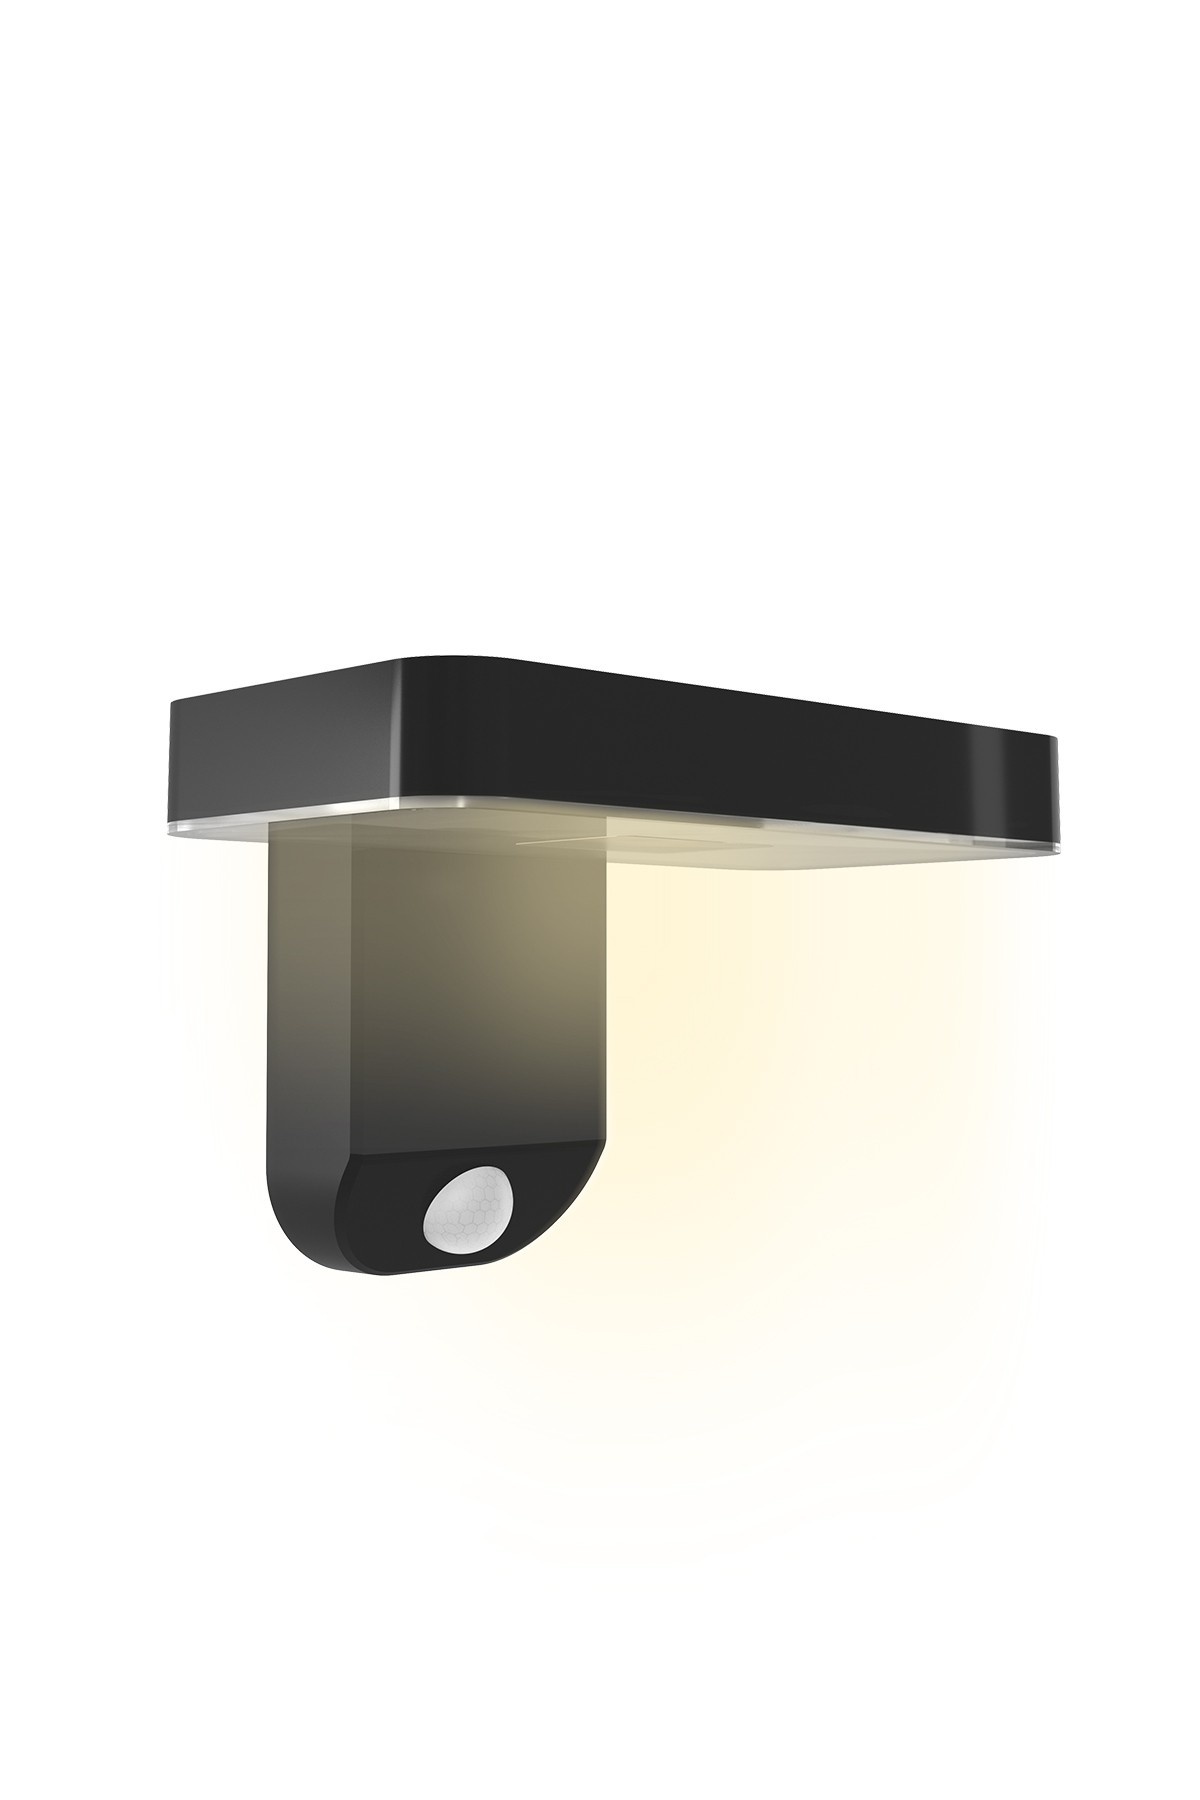 Lampesonline Lampe Solaire Extérieur - 2W - 110lm - IP65 - CCT Couleur  claire réglable